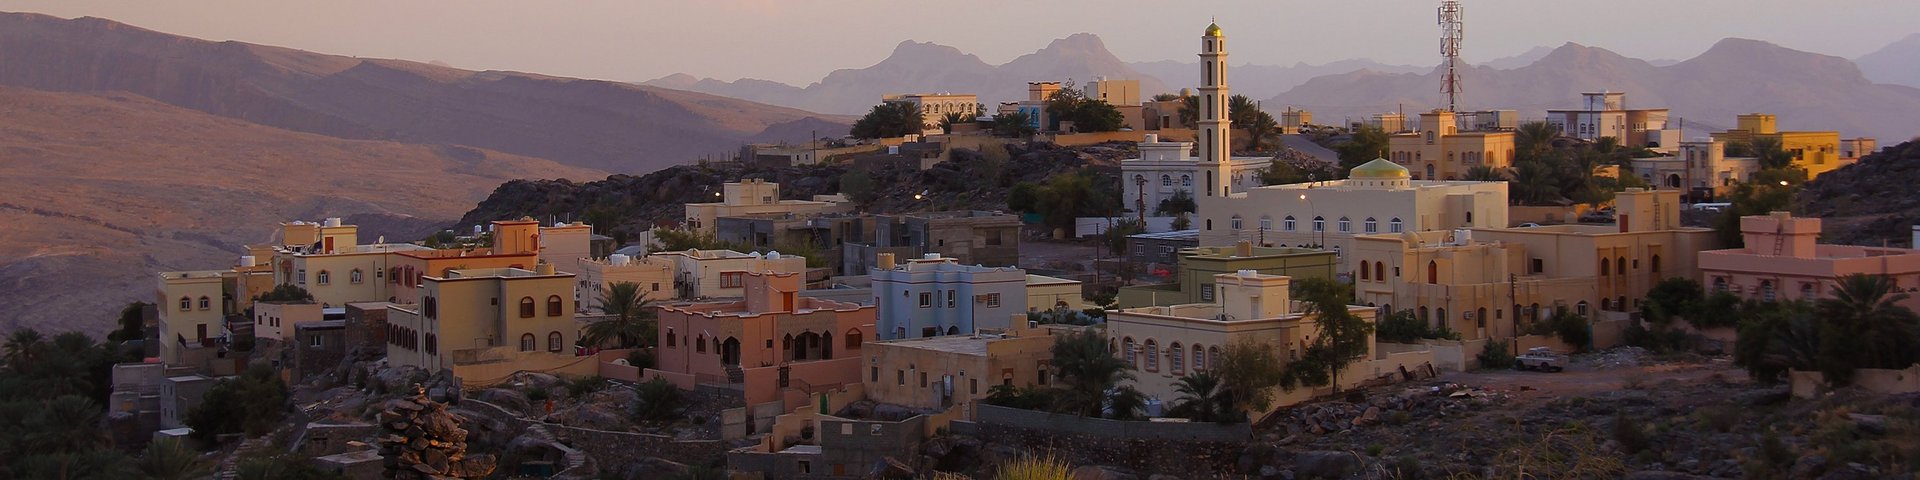 Orientalisches Dorf im Oman